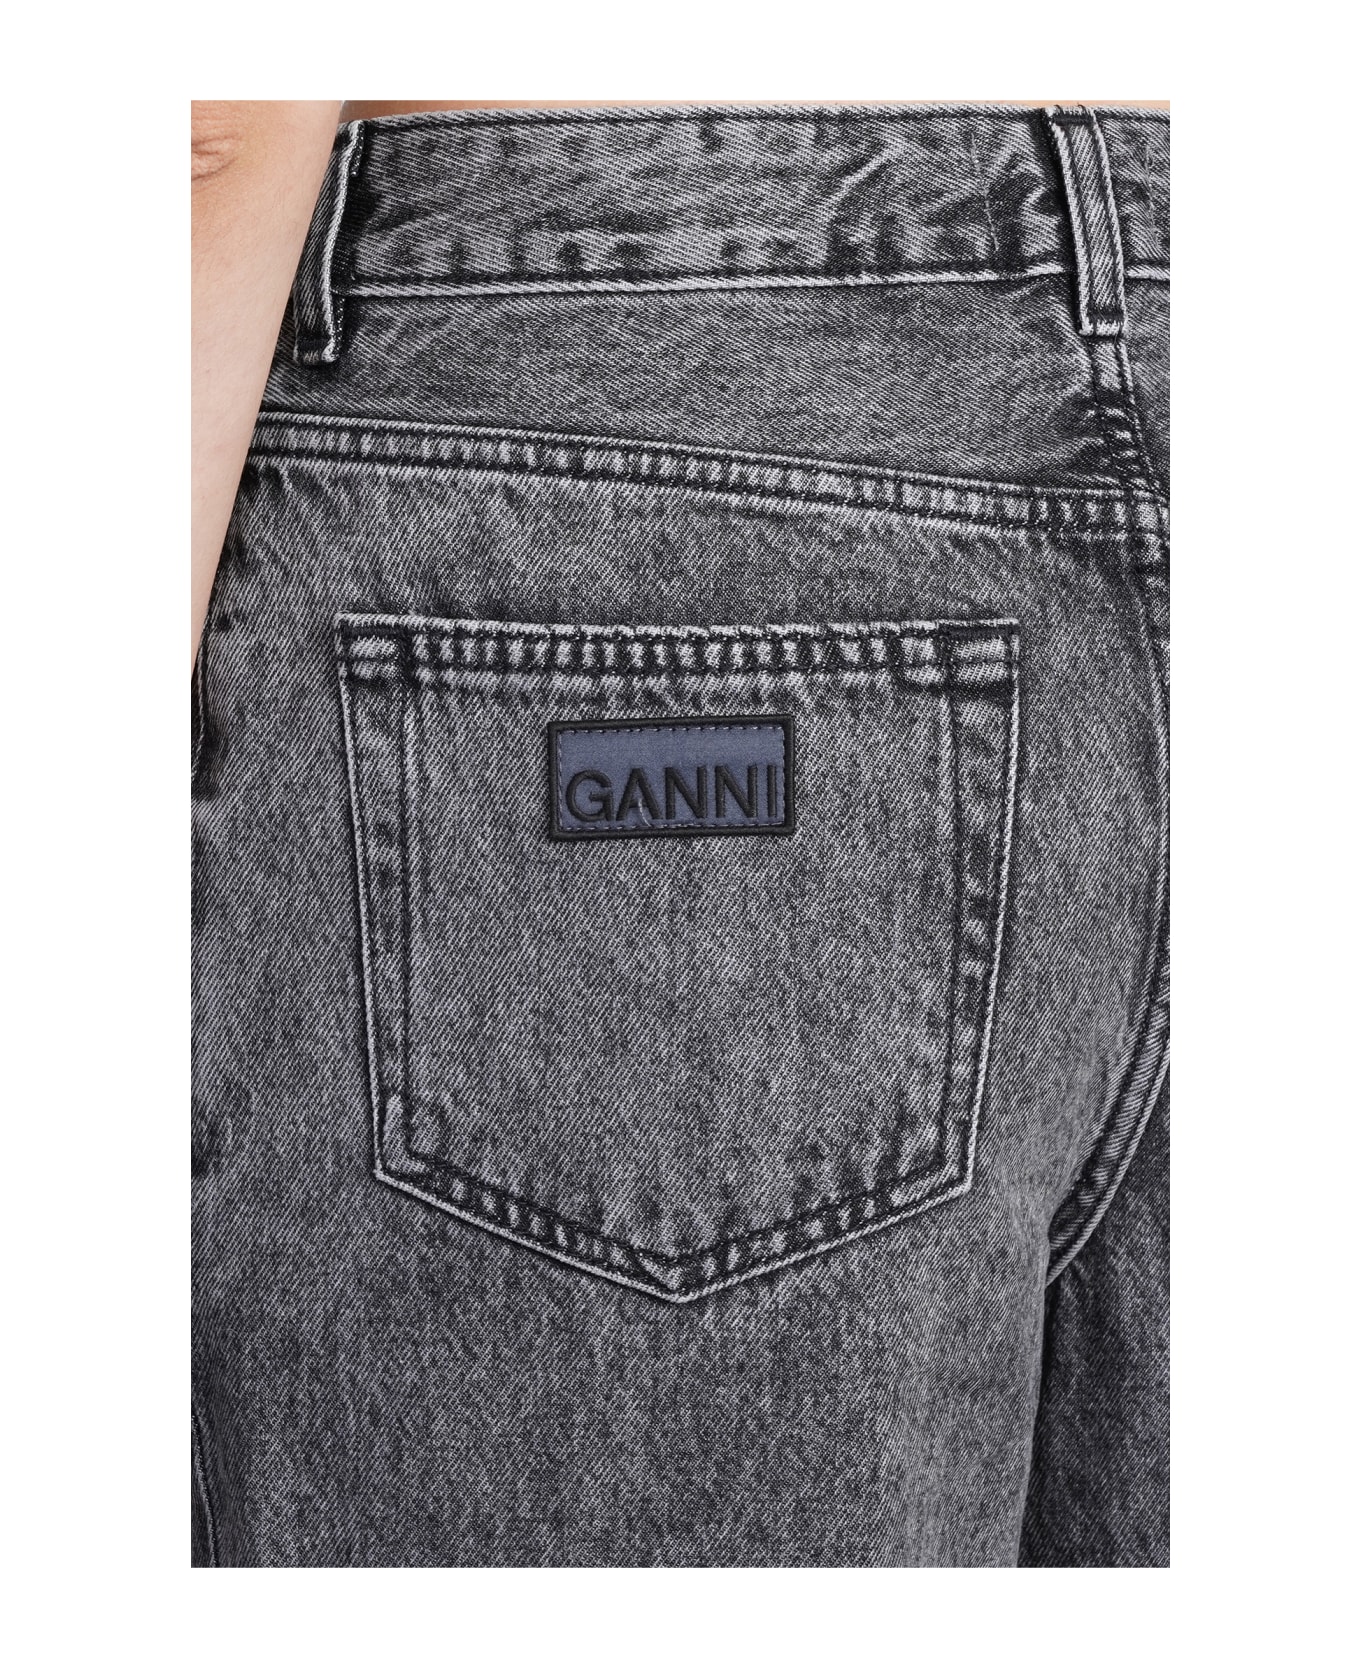 Ganni Cargo Jeans - BLACK WASHED